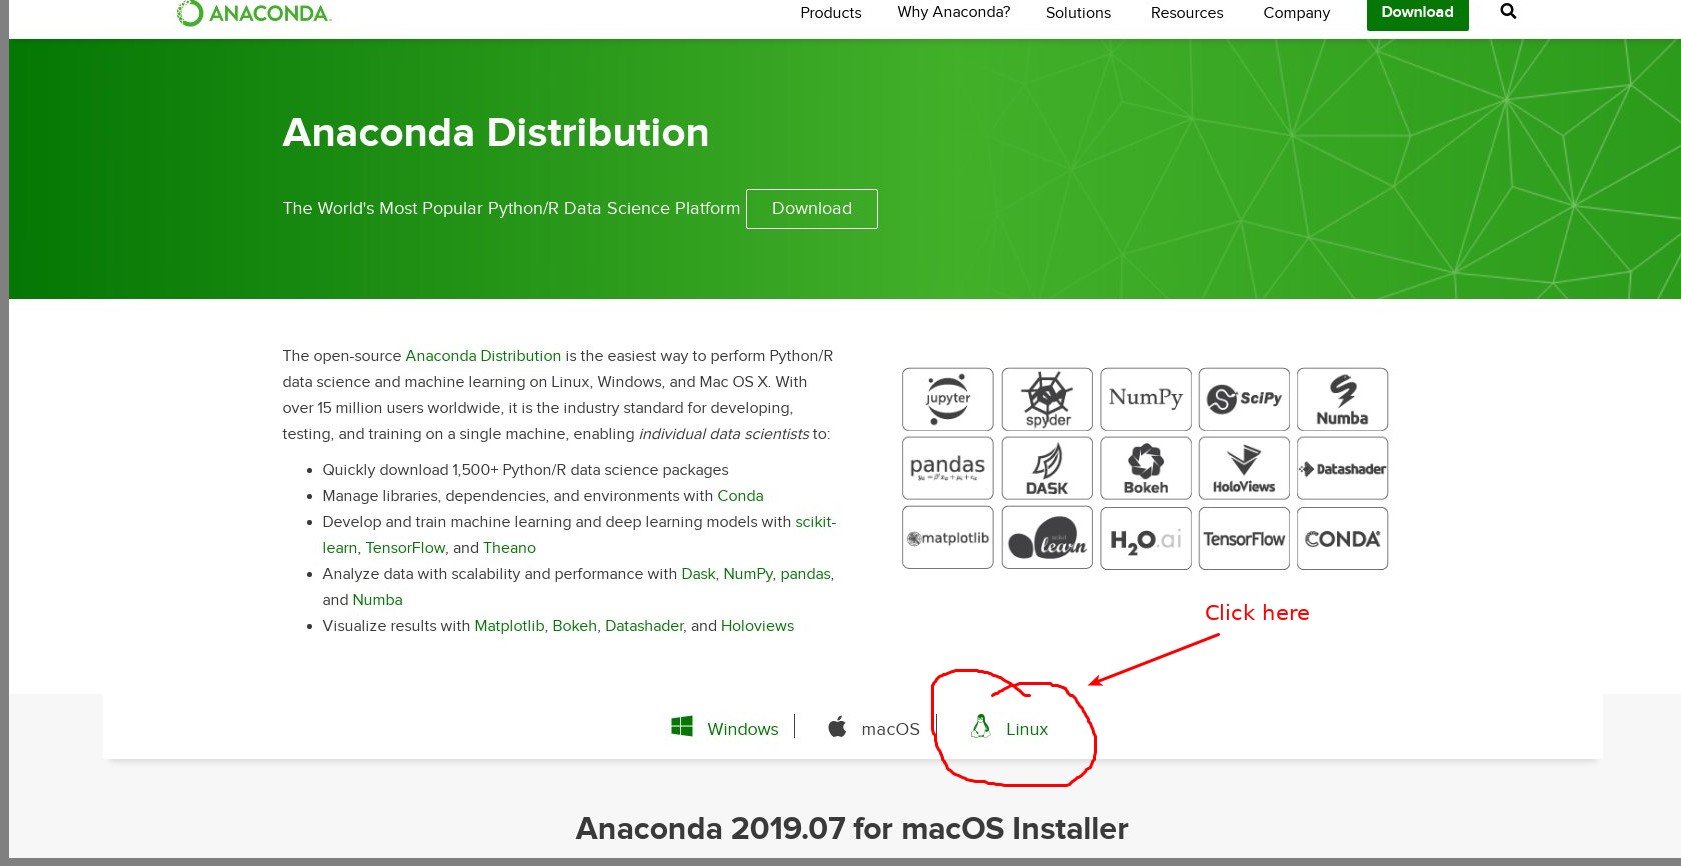 Anaconda web page